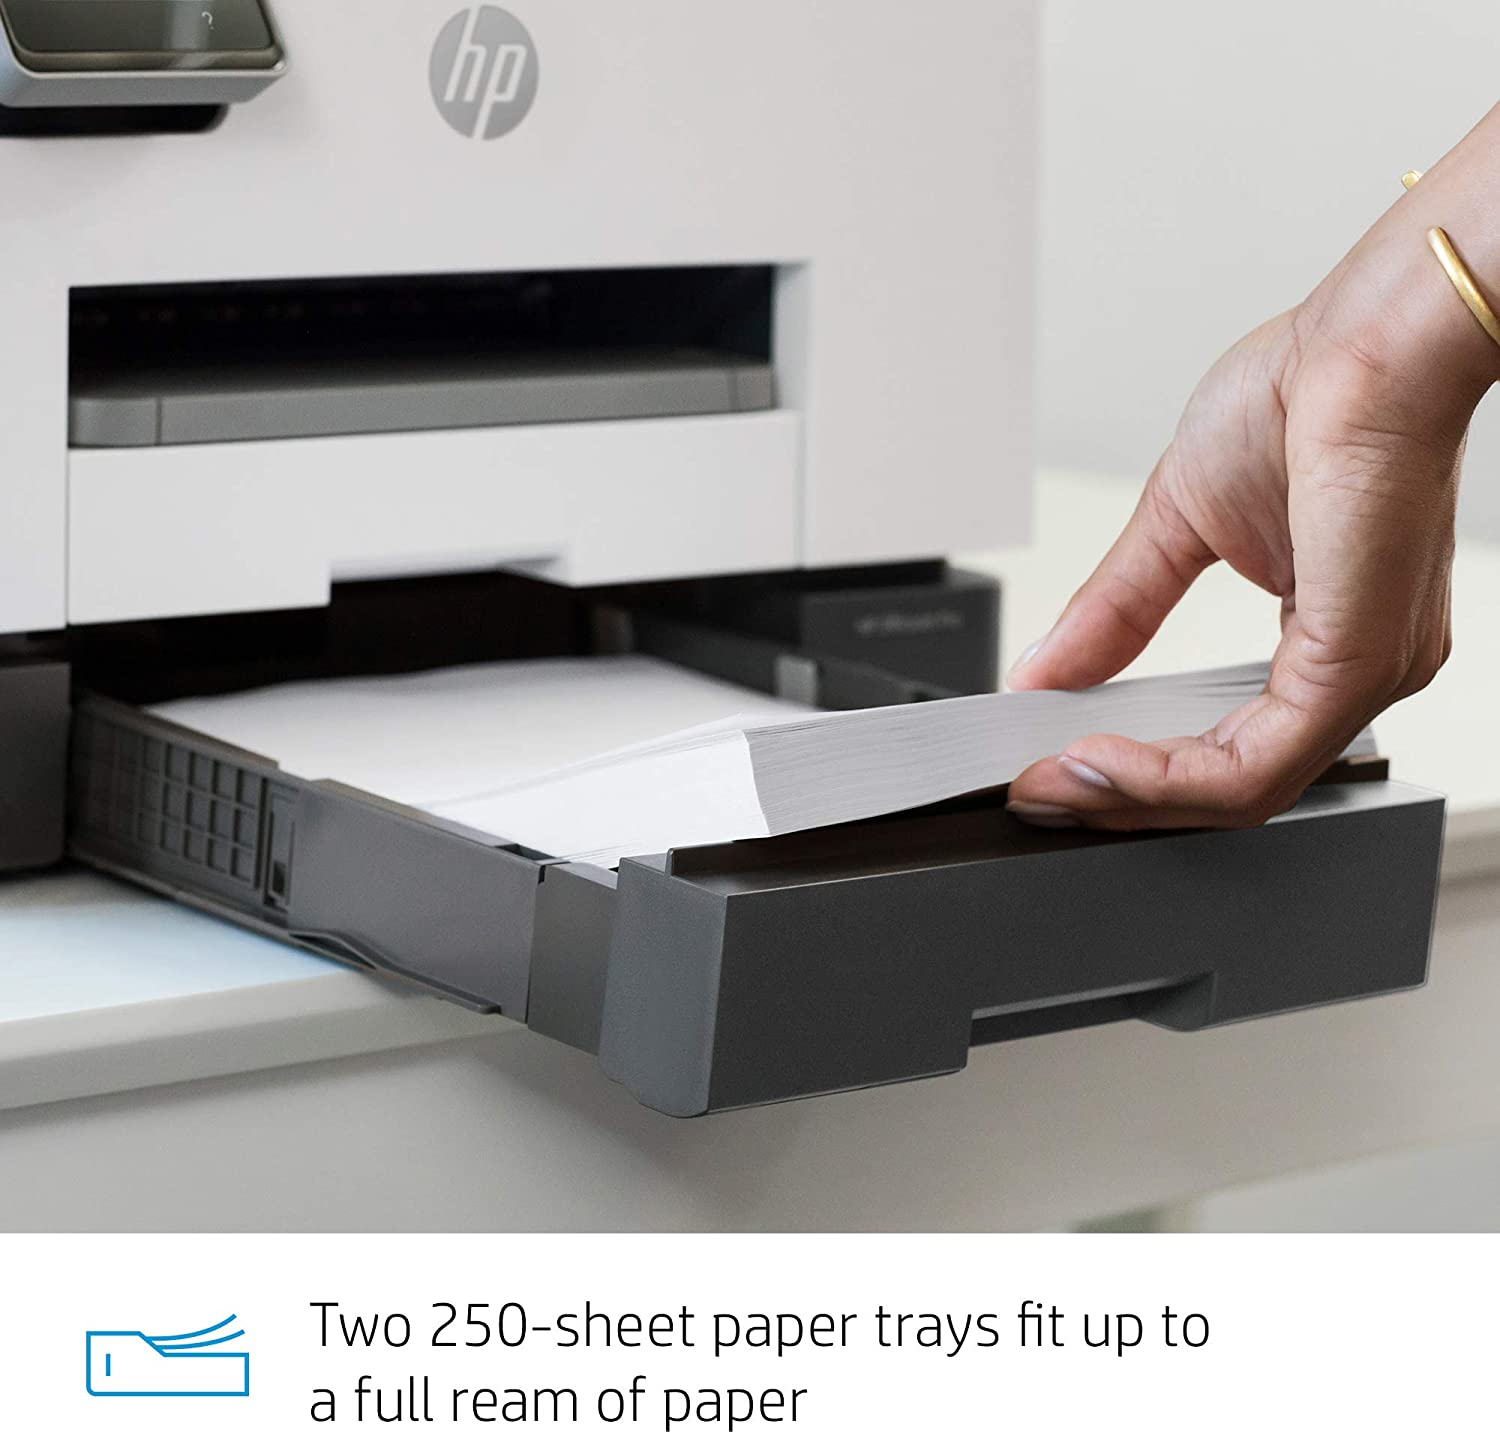 HP OfficeJet Pro 9020 All-in-One Wireless Printer